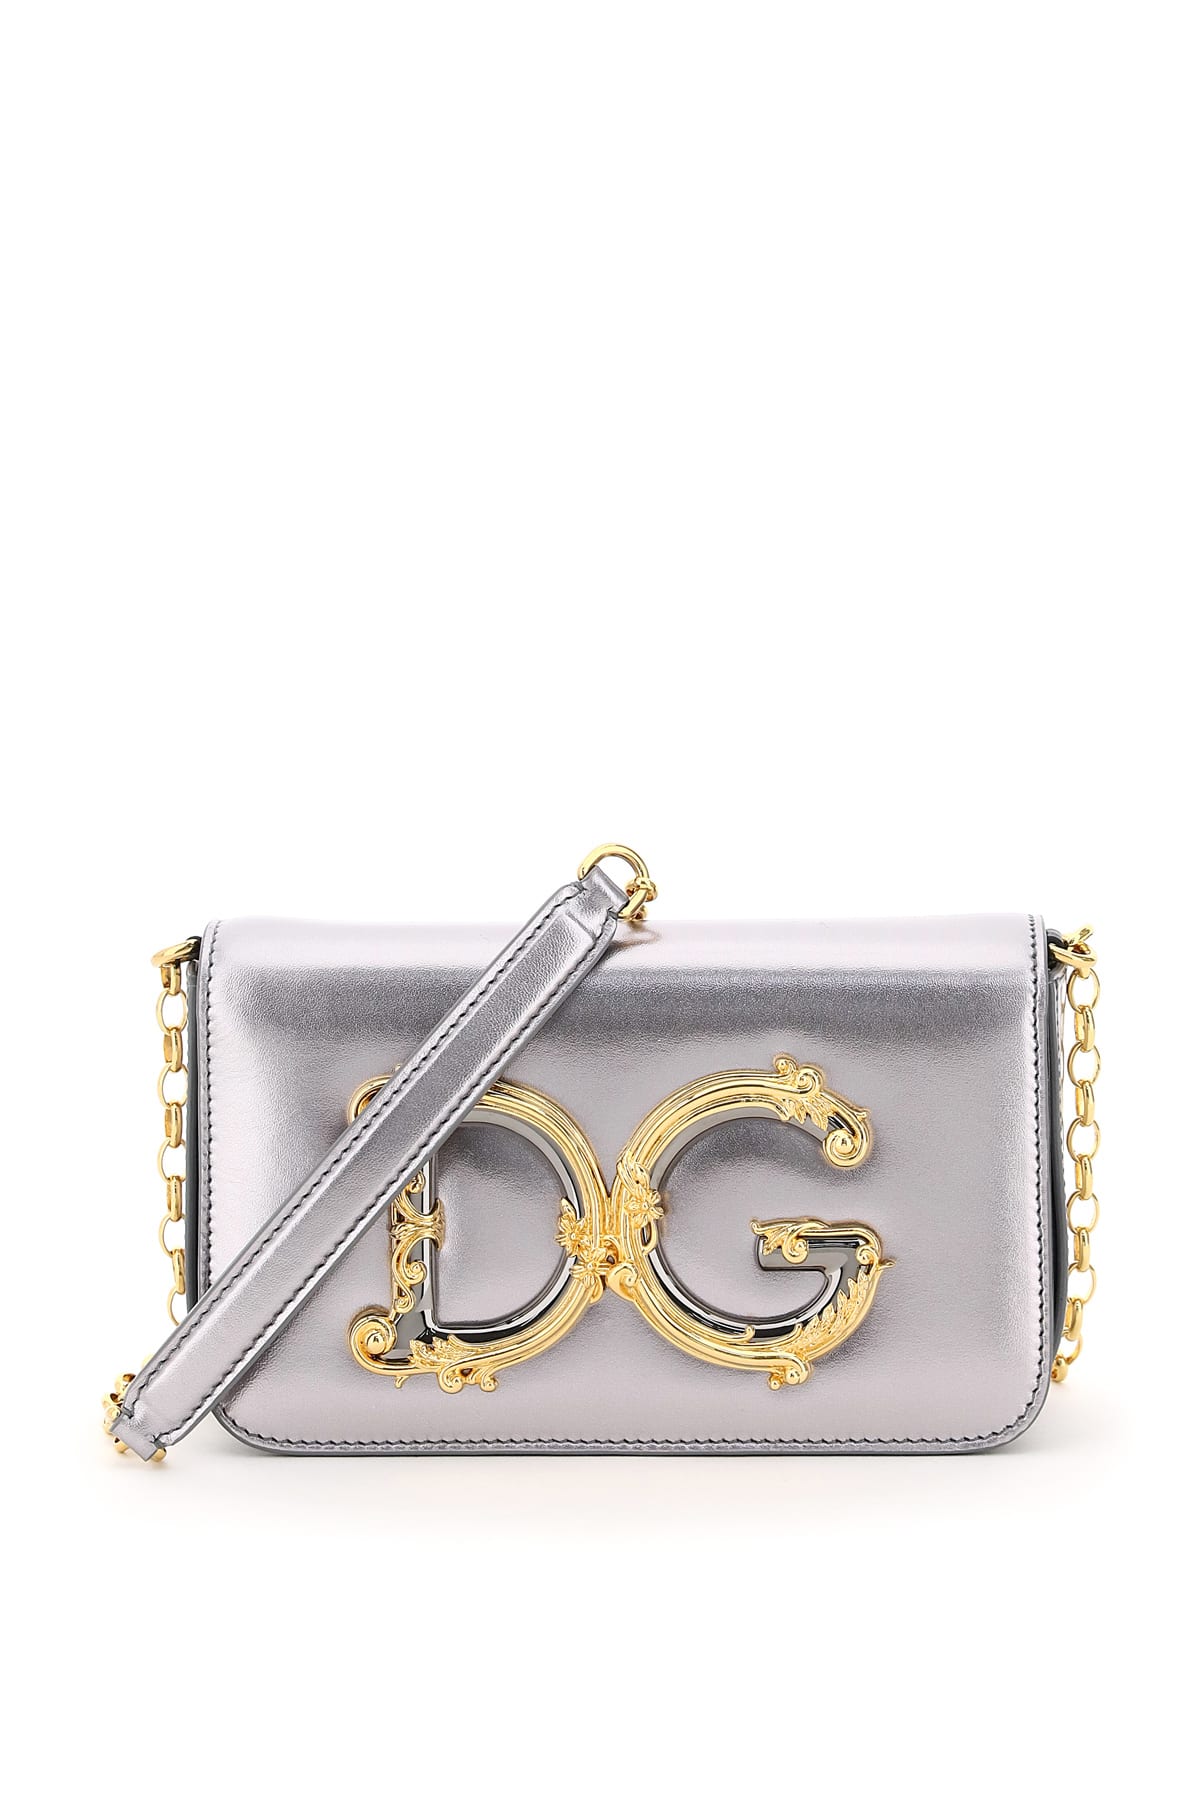 Dolce & Gabbana Dg Girls Clutch